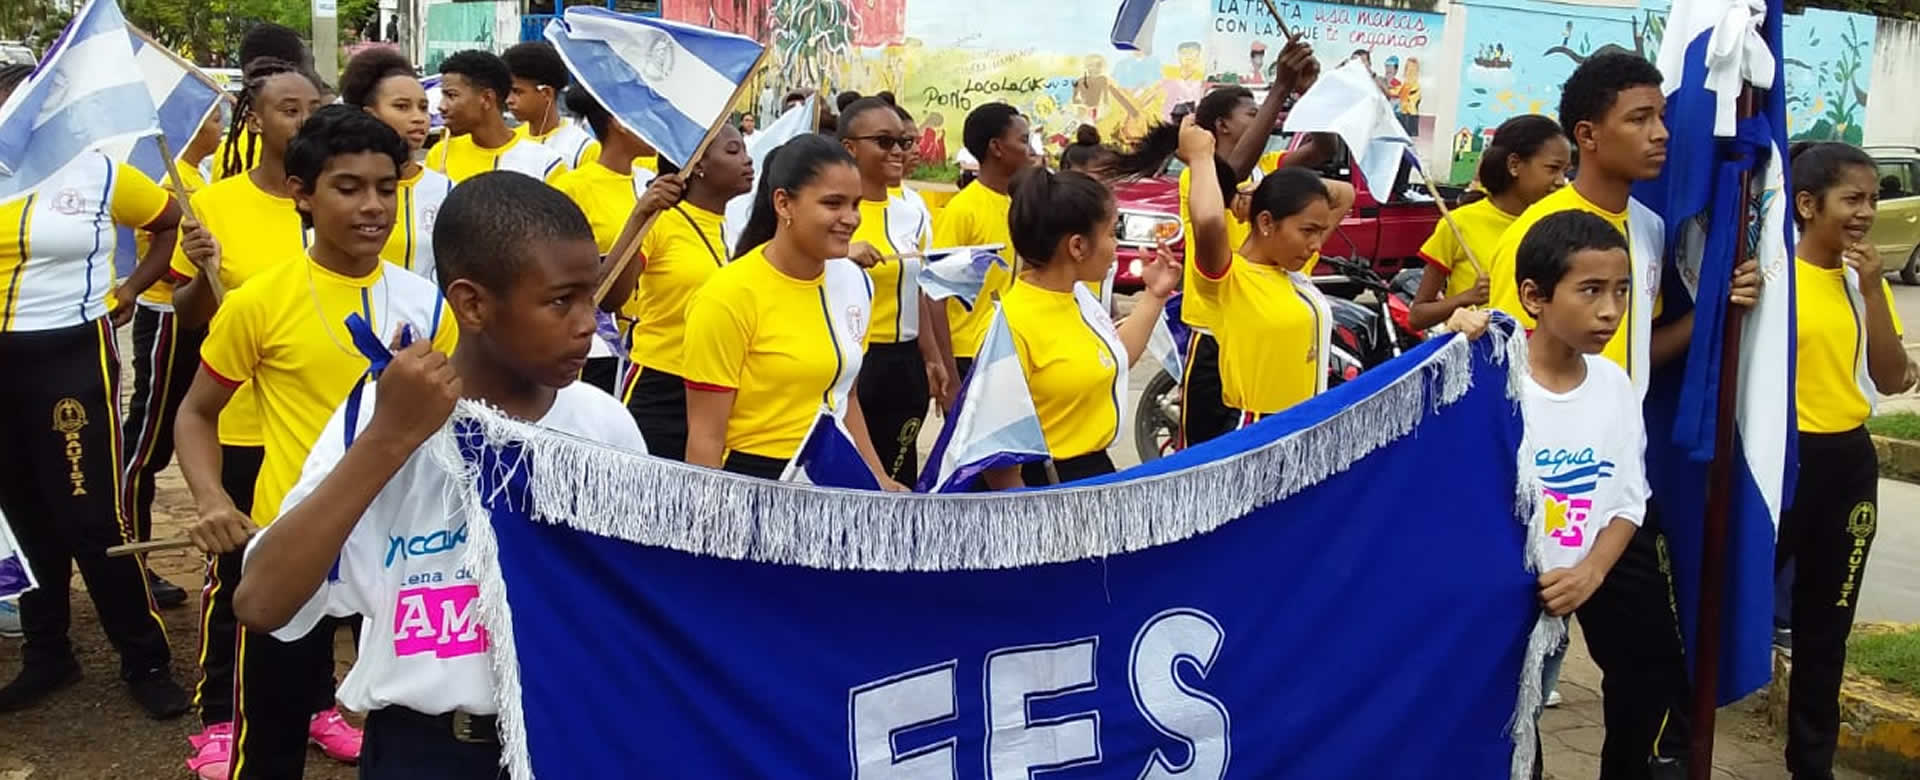 Caribe Sur de Nicaragua da la bienvenida a las fiestas patrias